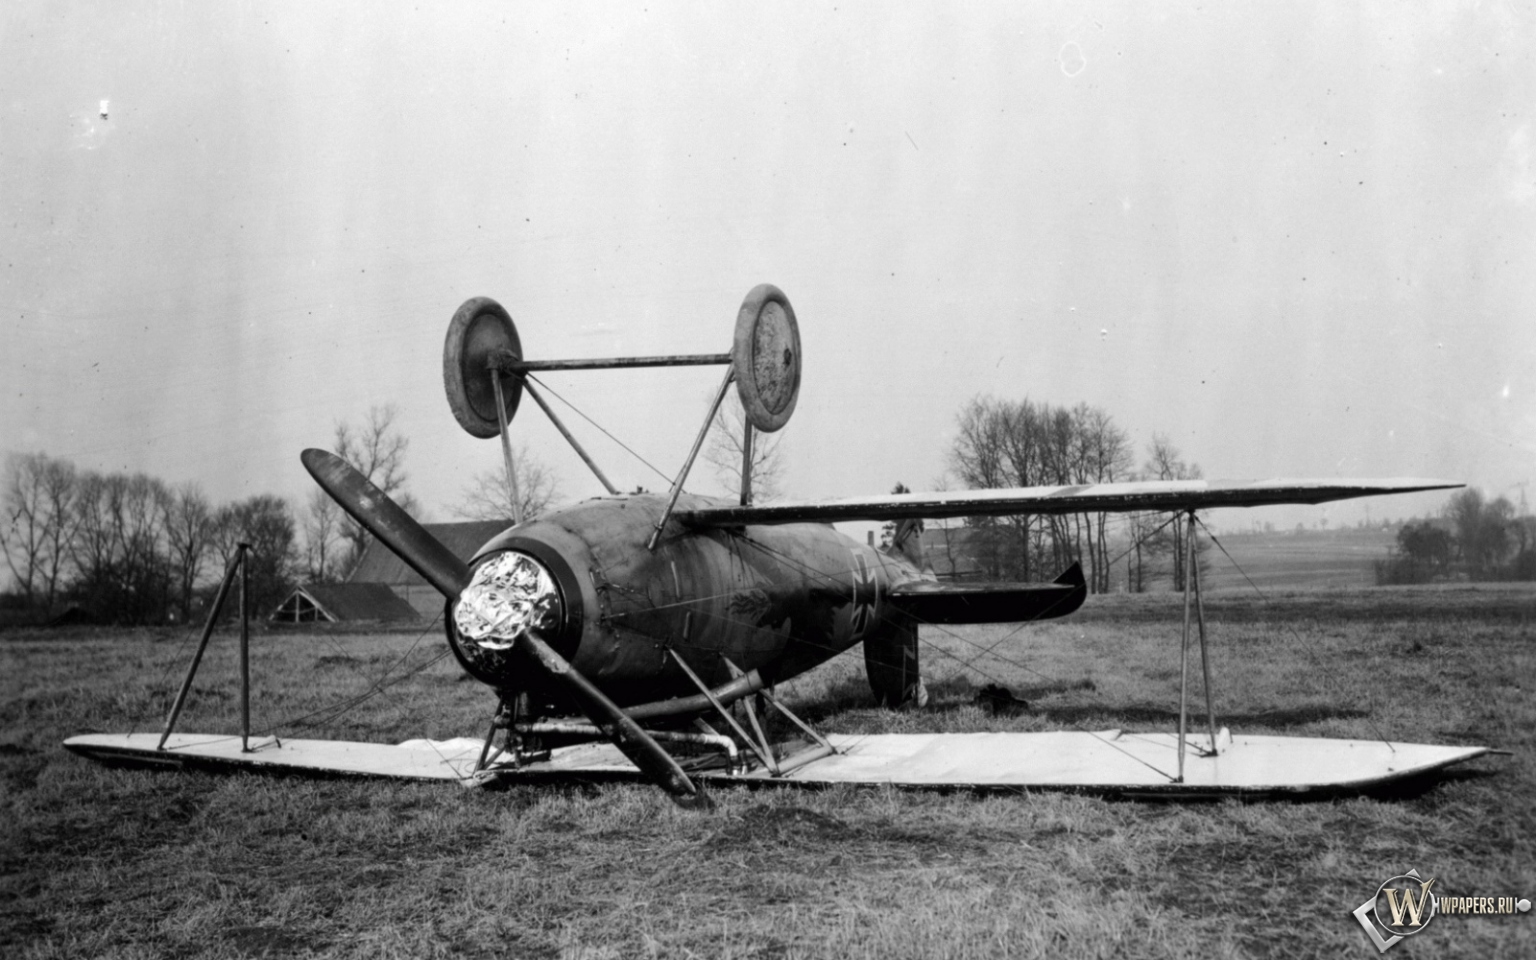 Albatros D-Va-1 1536x960